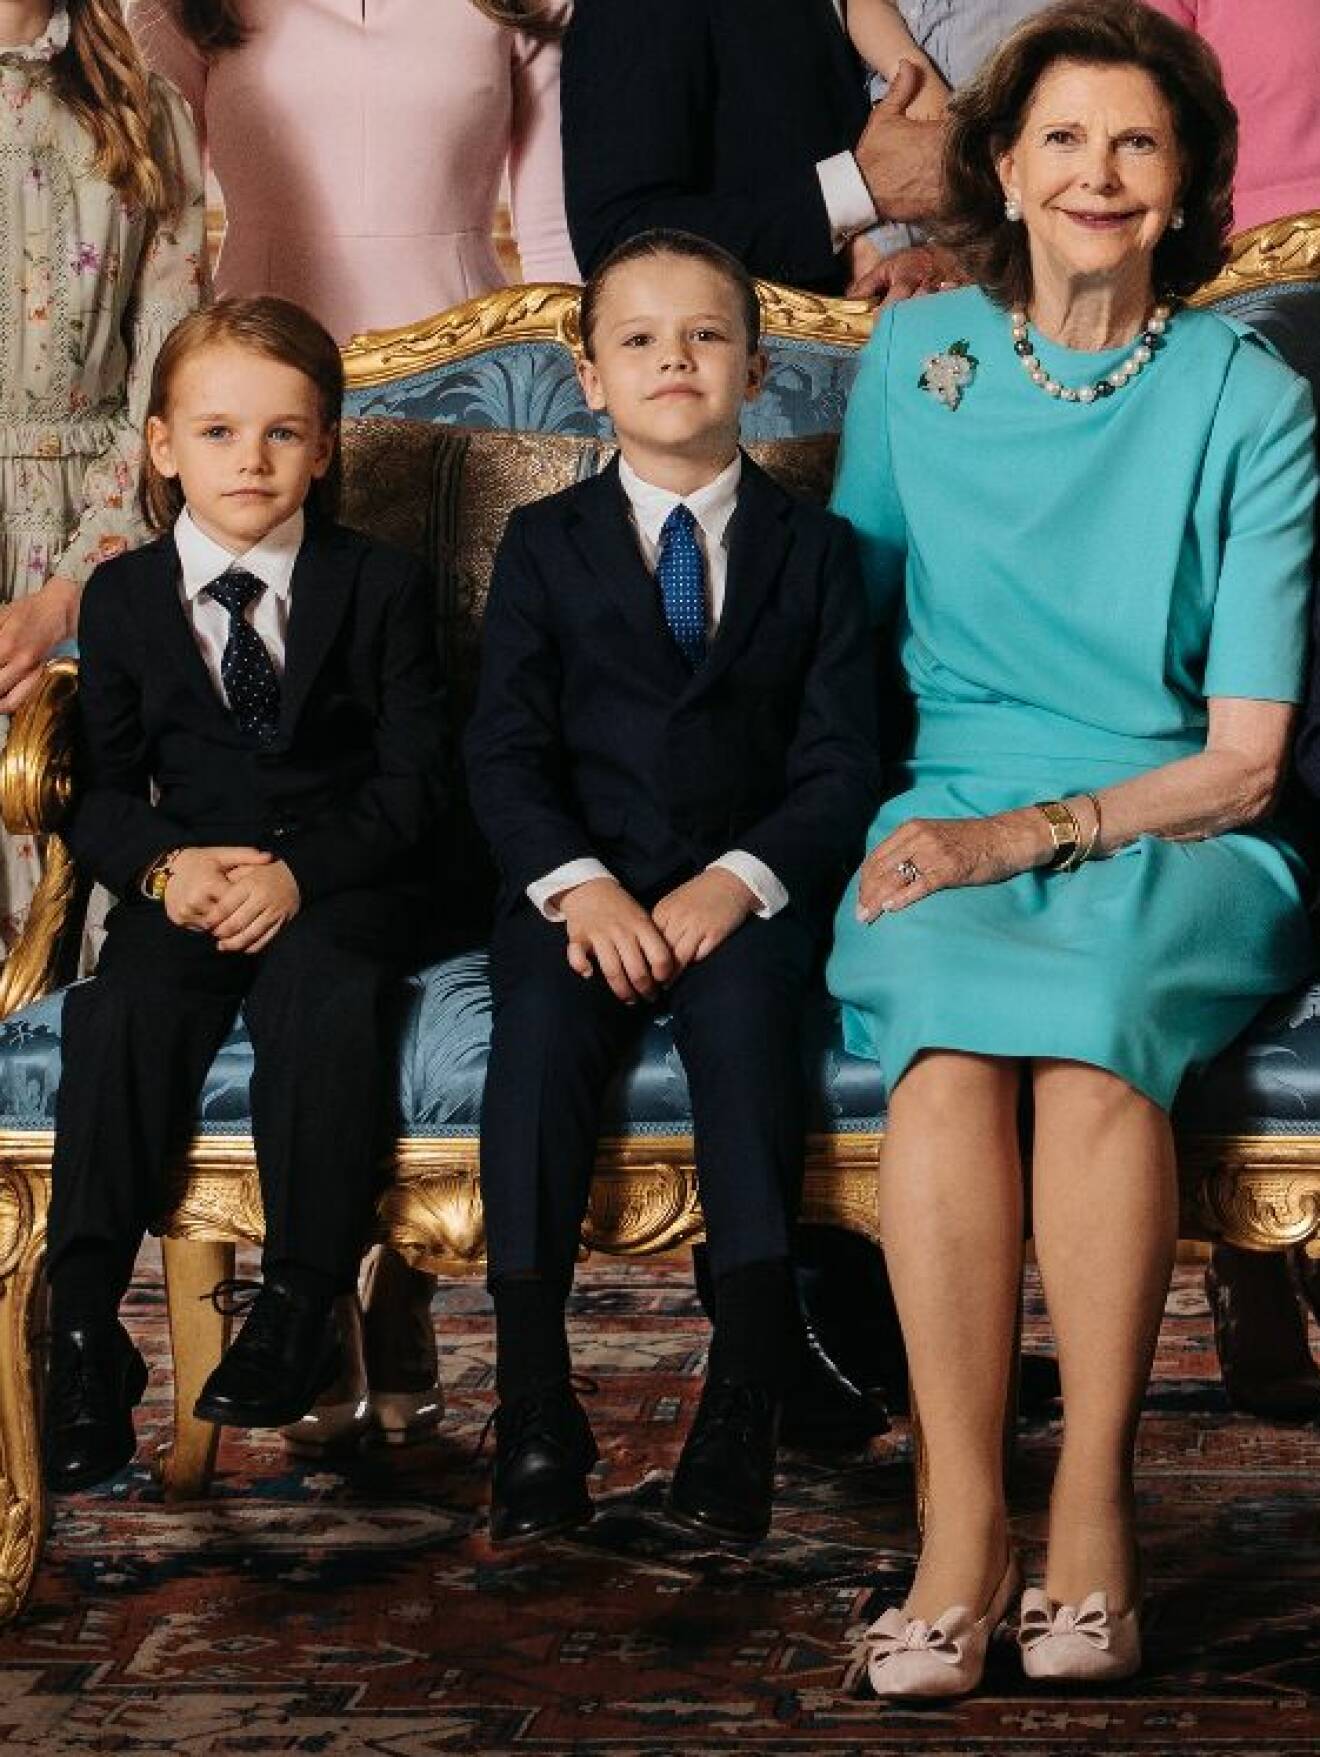 Drottning Silvia i skor från Sole Bliss, här med barnbarnen prins Gabriel och prins Alexander